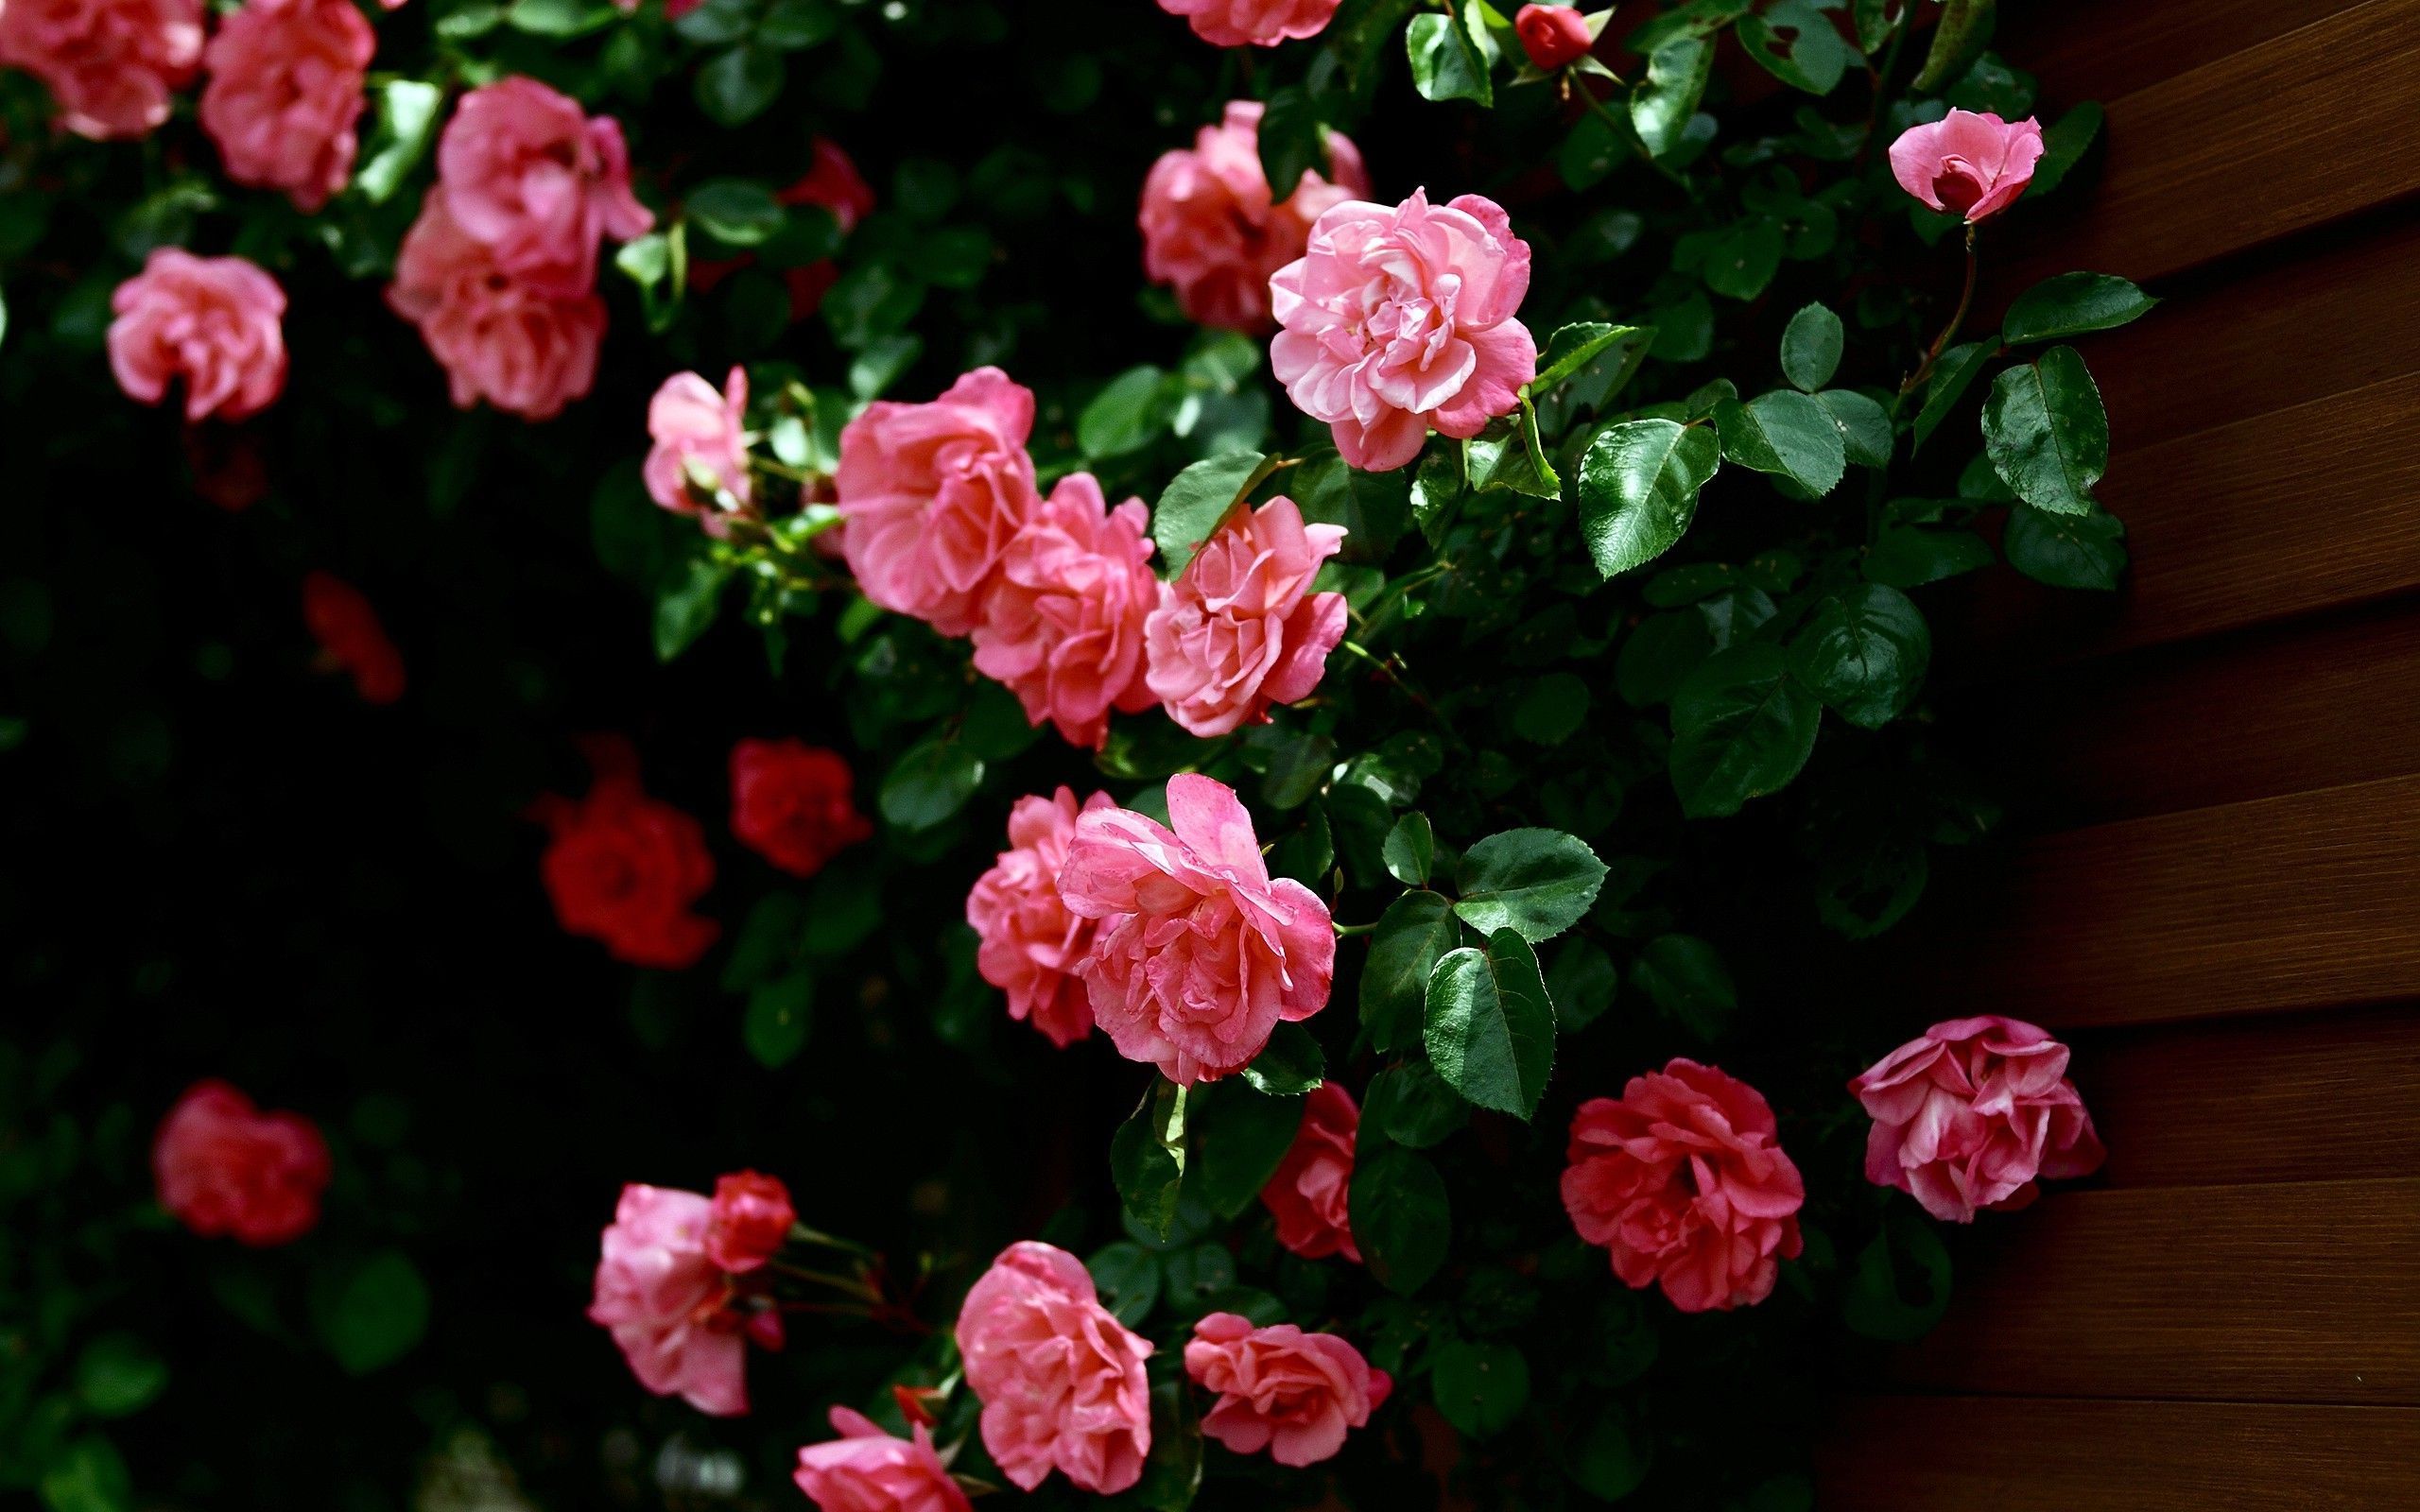 Скачать обои бесплатно Роза, Лист, Земля/природа, Розовый Цветок, Розовый Куст картинка на рабочий стол ПК